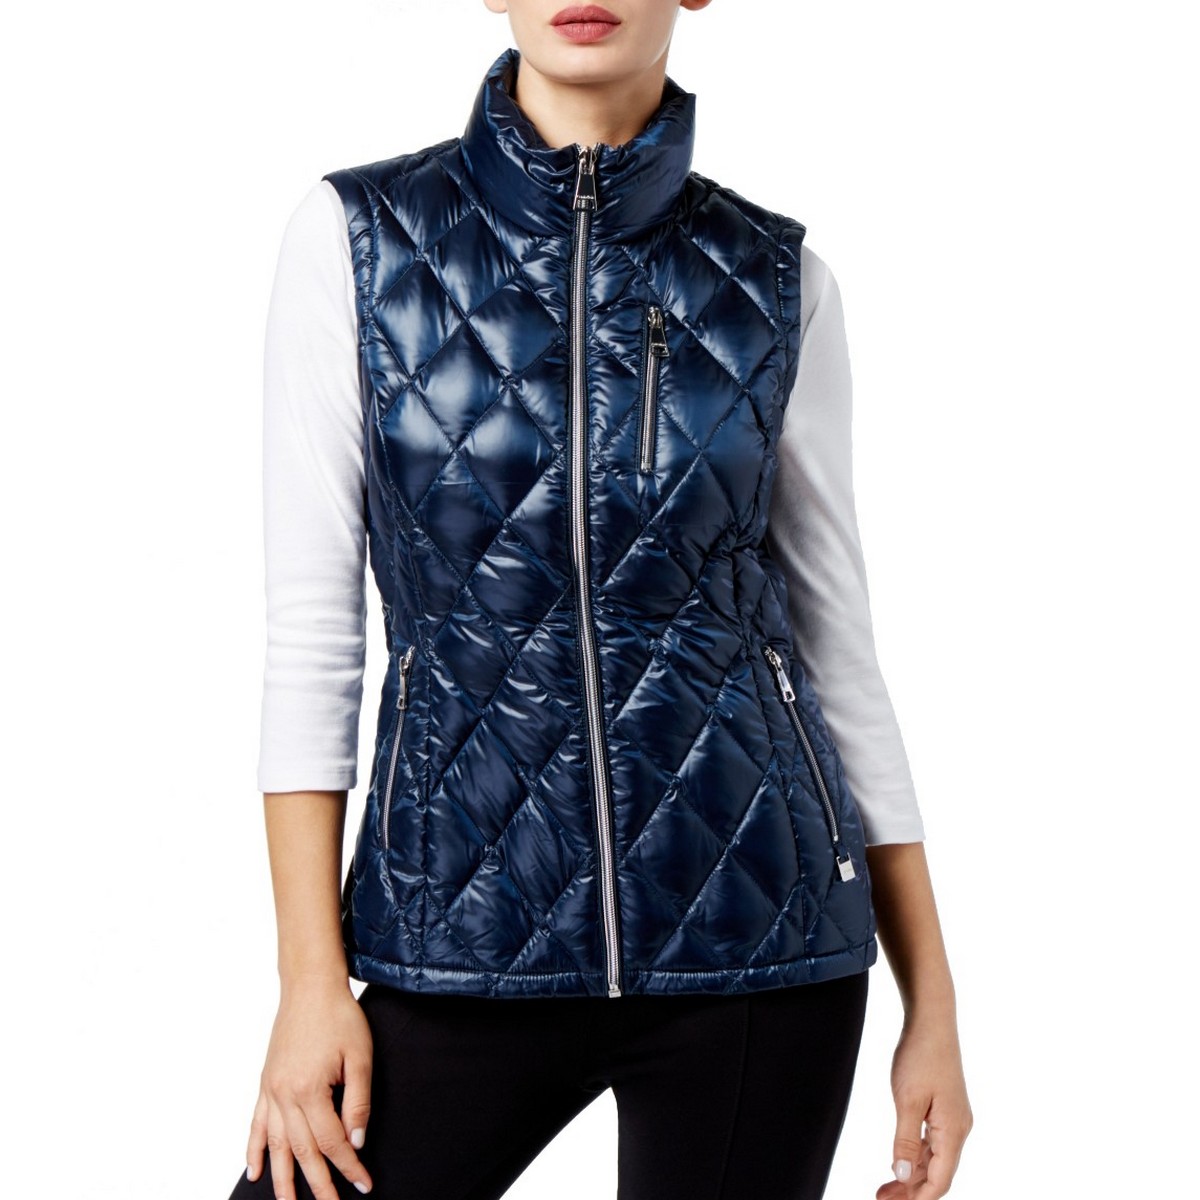 CALVIN KLEIN NEW Women's Navy Metallic Quilted Vest Jacket Top XL TEDO ...